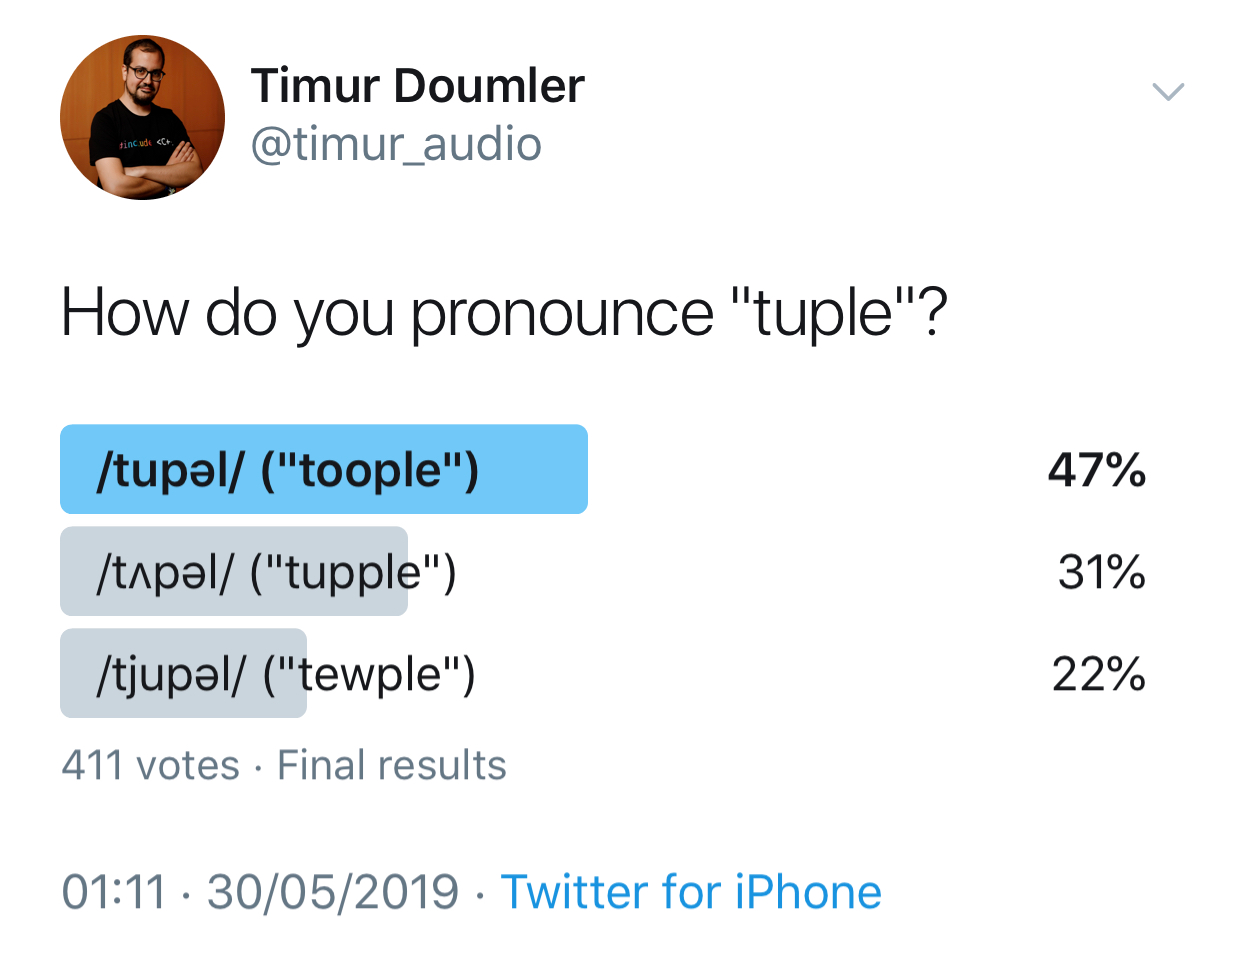 /img/pronounce-tuple.png